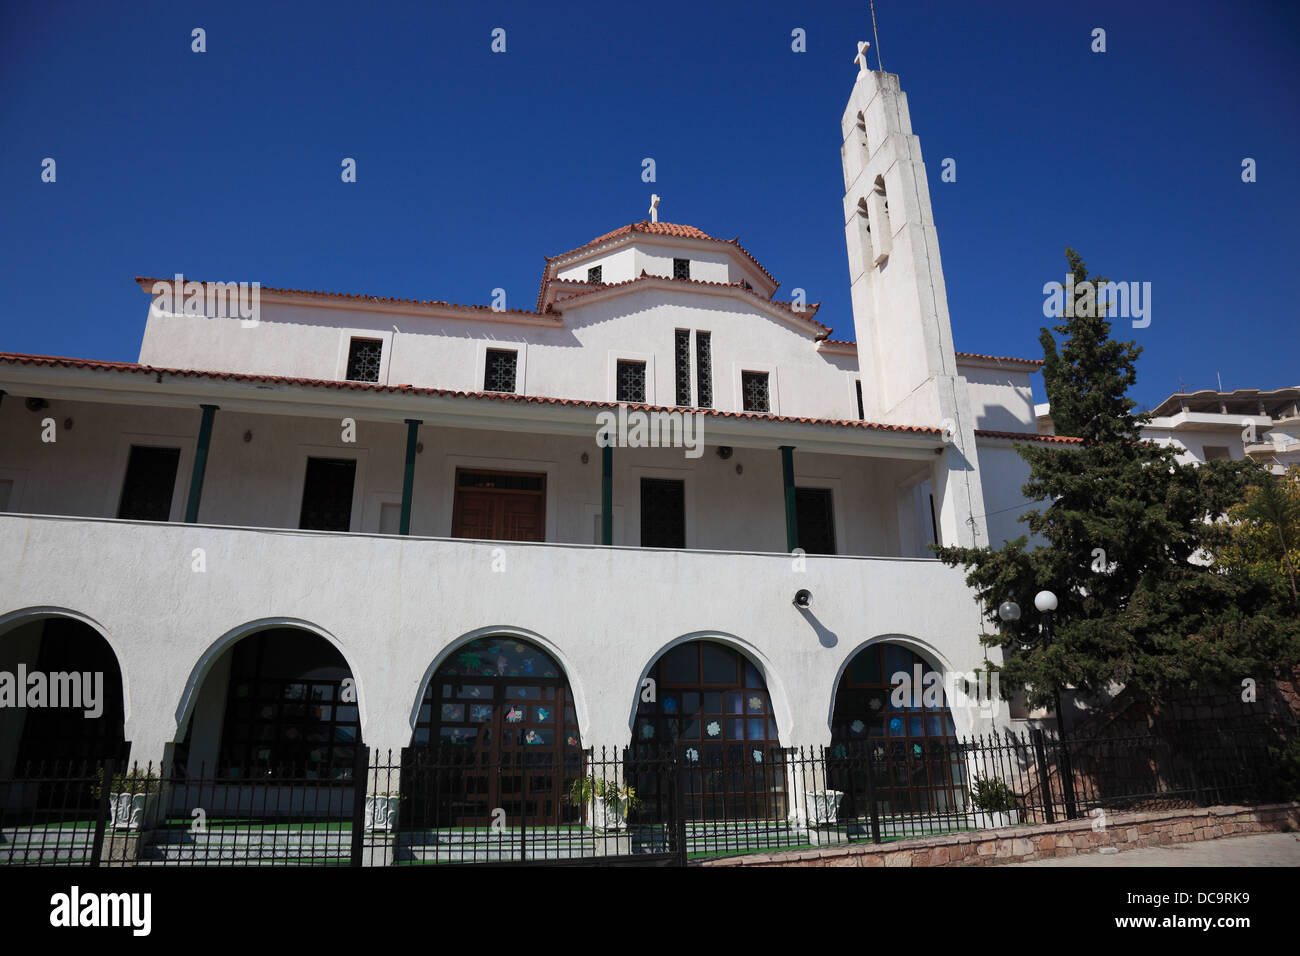 Saranda, Sarande, the orthodoxe church, city at the Ionian Sea, Albania Stock Photo